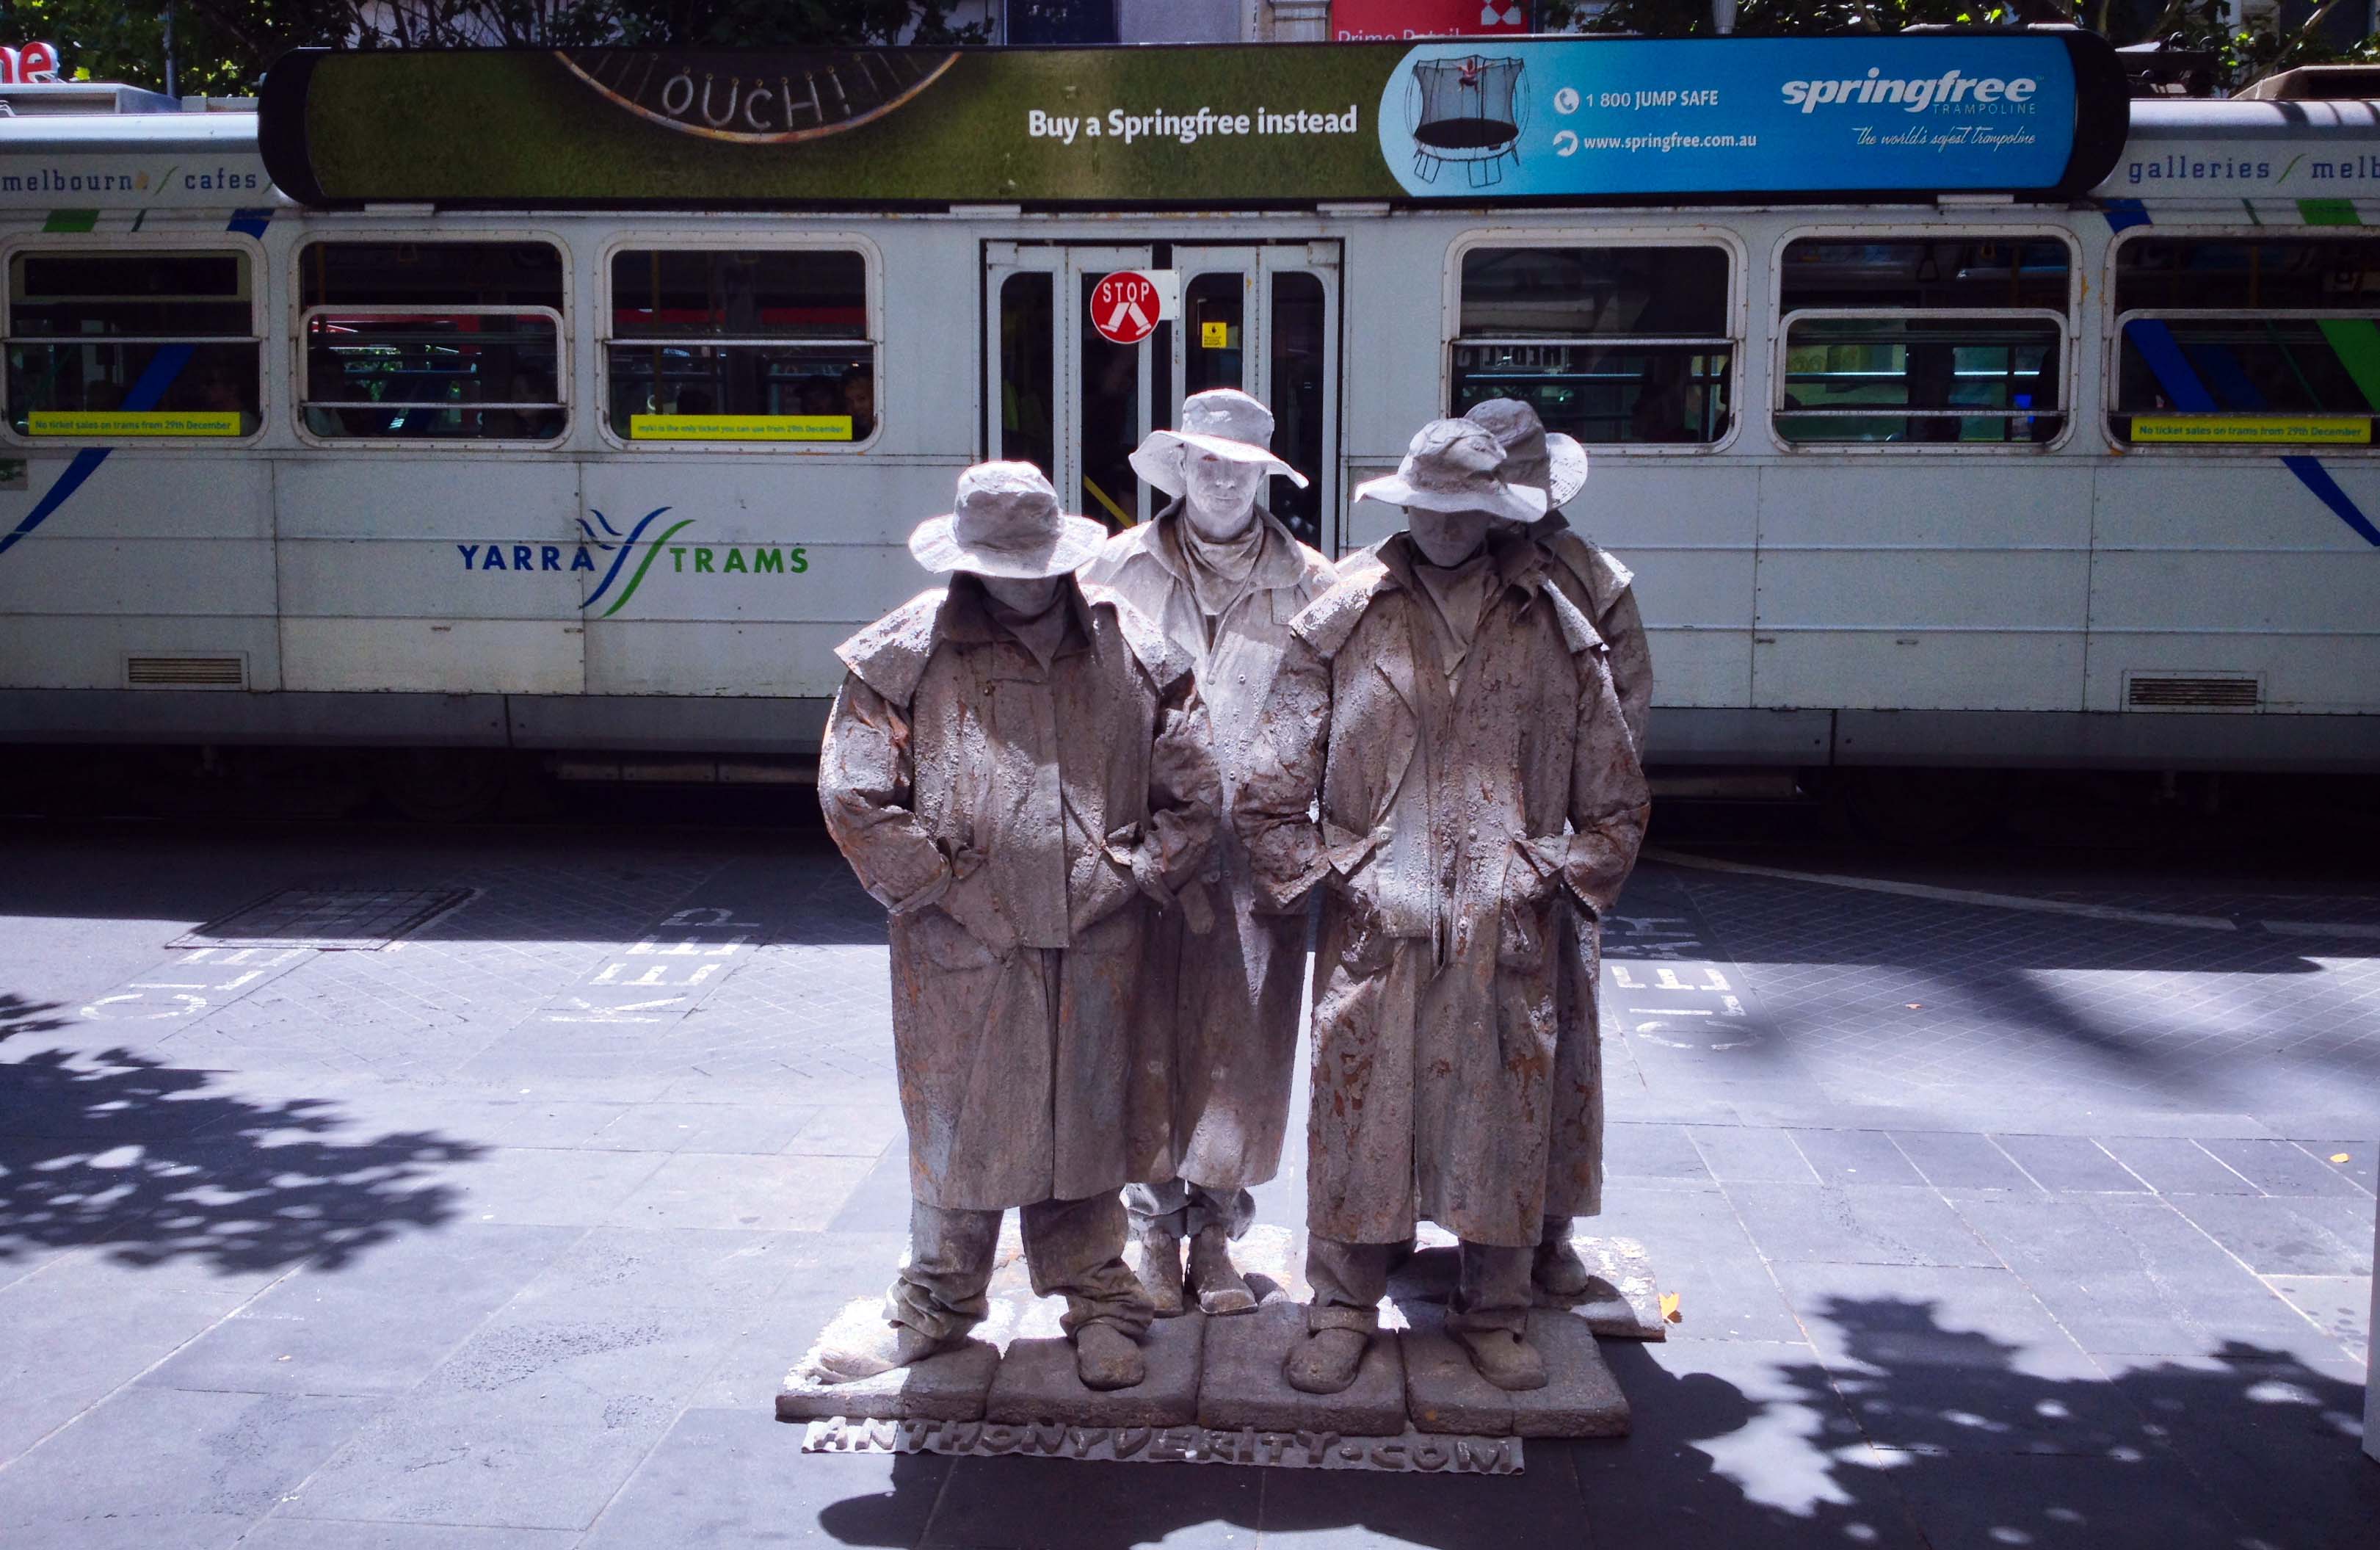 Bốn người tượng đứng trước trạm tàu điện (tram) trong một trưa hè tràn nắng trên khu phố mua sắm Bourke Street Mall. Họ đứng bất động hàng giờ, mỗi tư thế thay đổi đều giữ rất lâu.